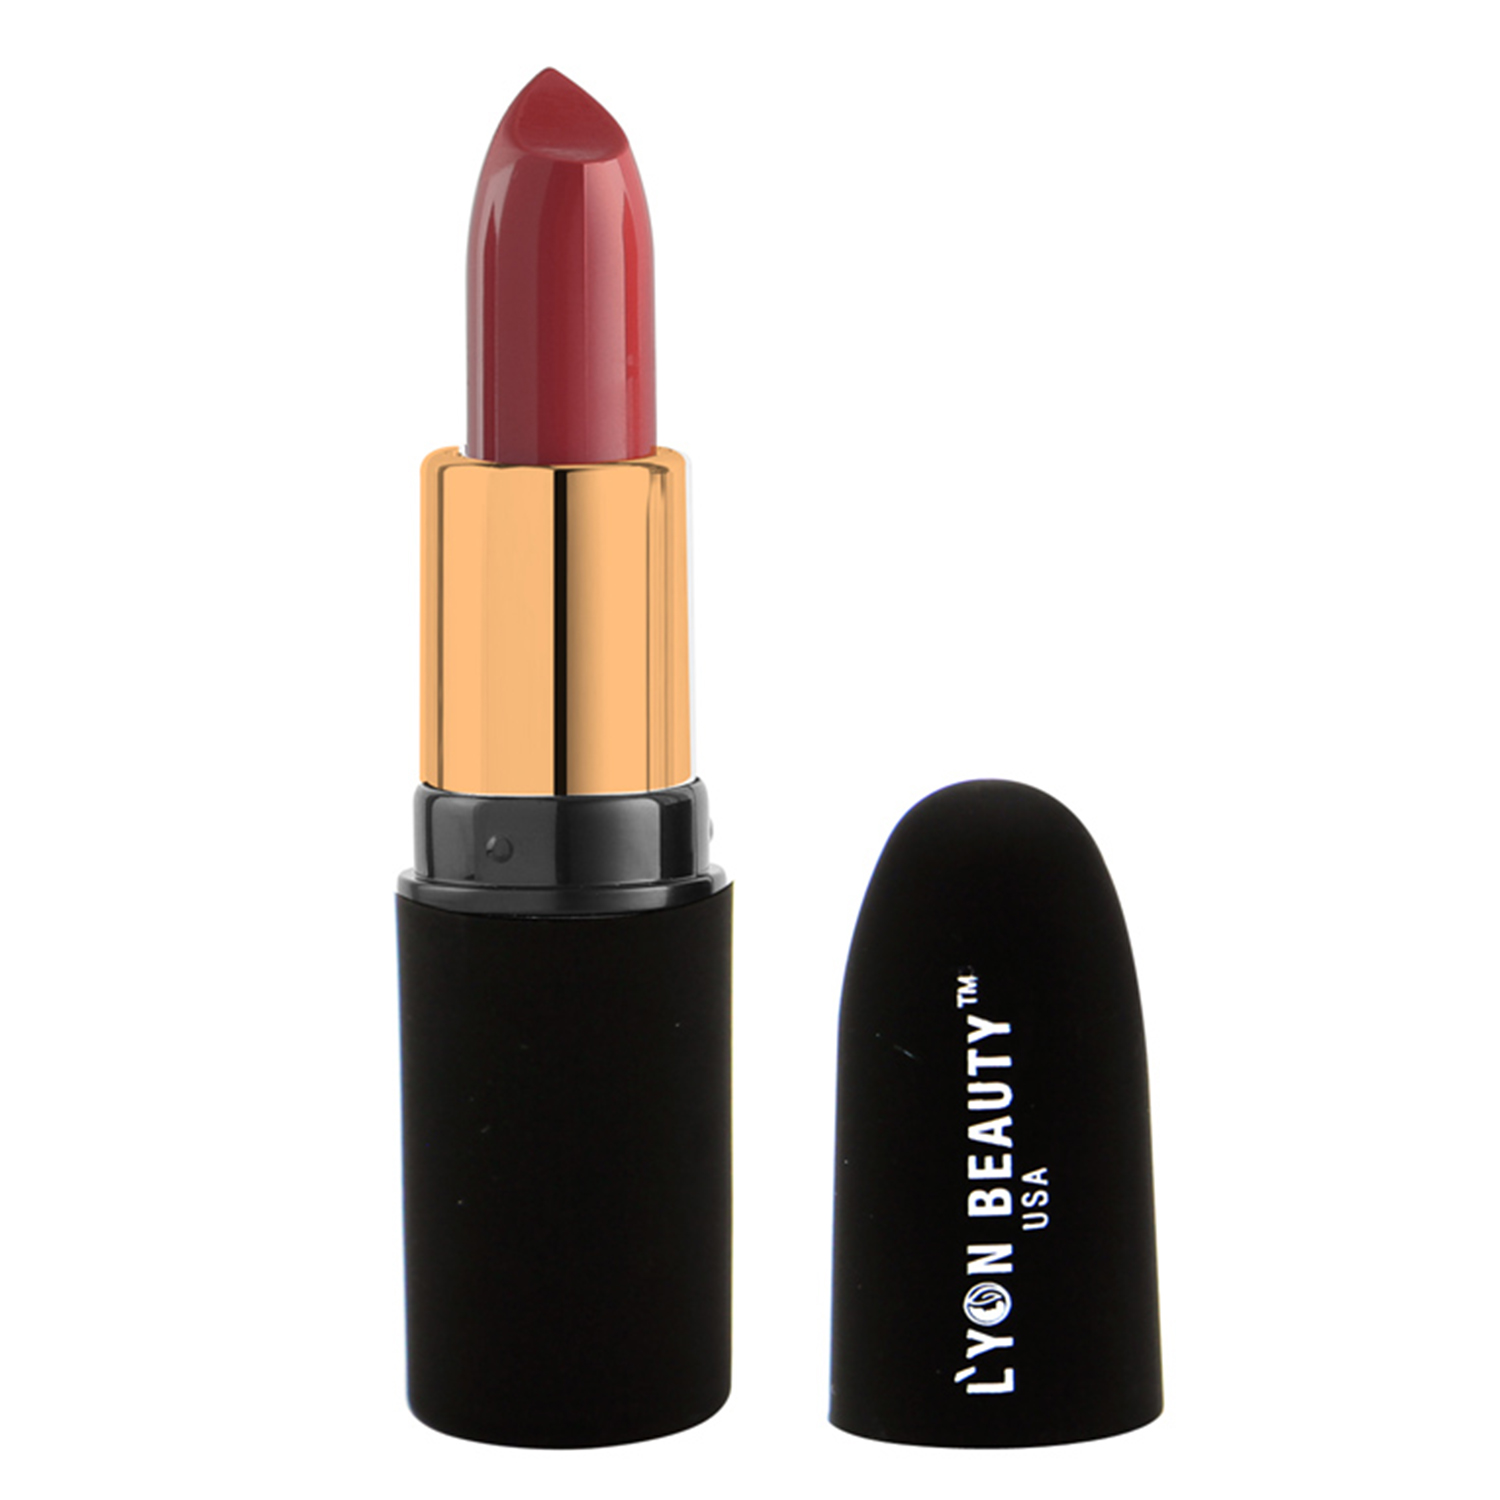 Lyon Beauty USA Pure Powder Matte Lipstick, 3.5gm-222 Hot Nude